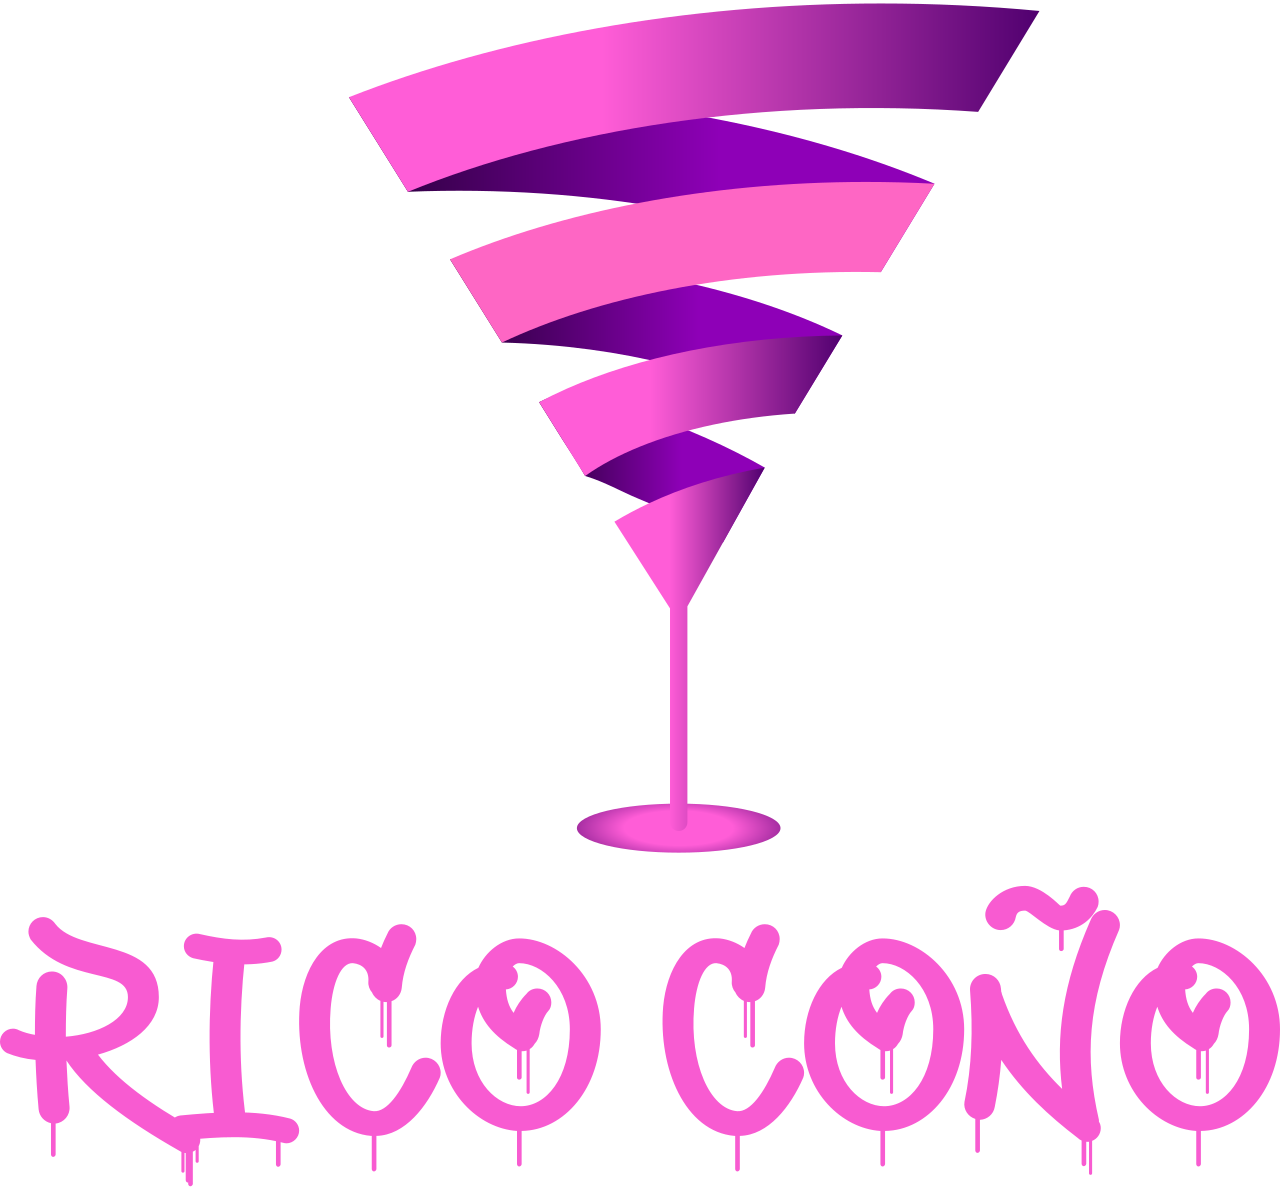 Rico coño's logo